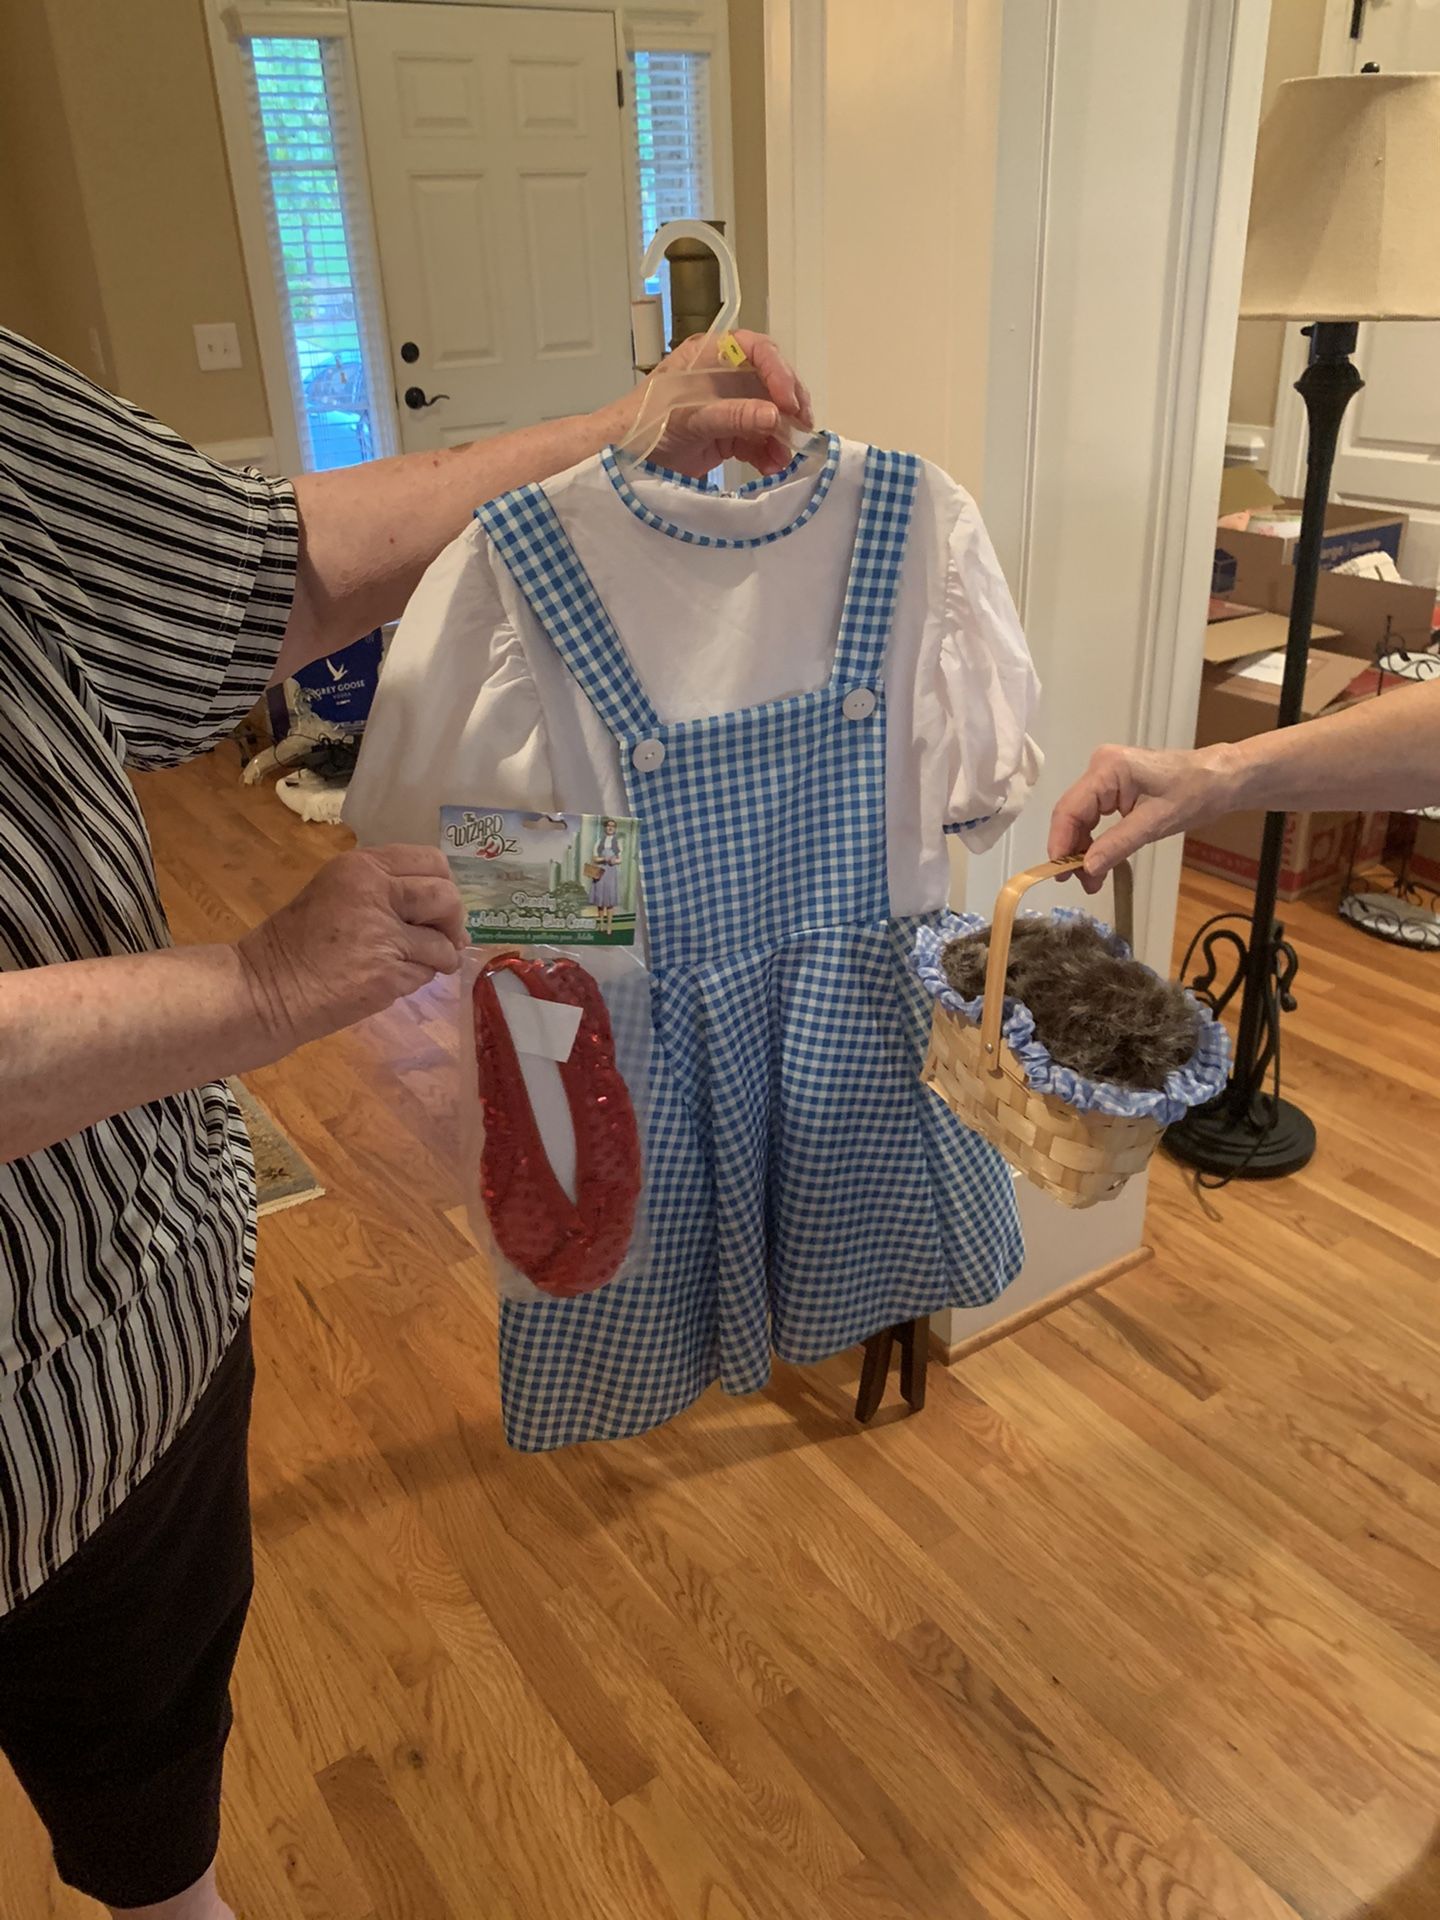 Dorothy costume for kid